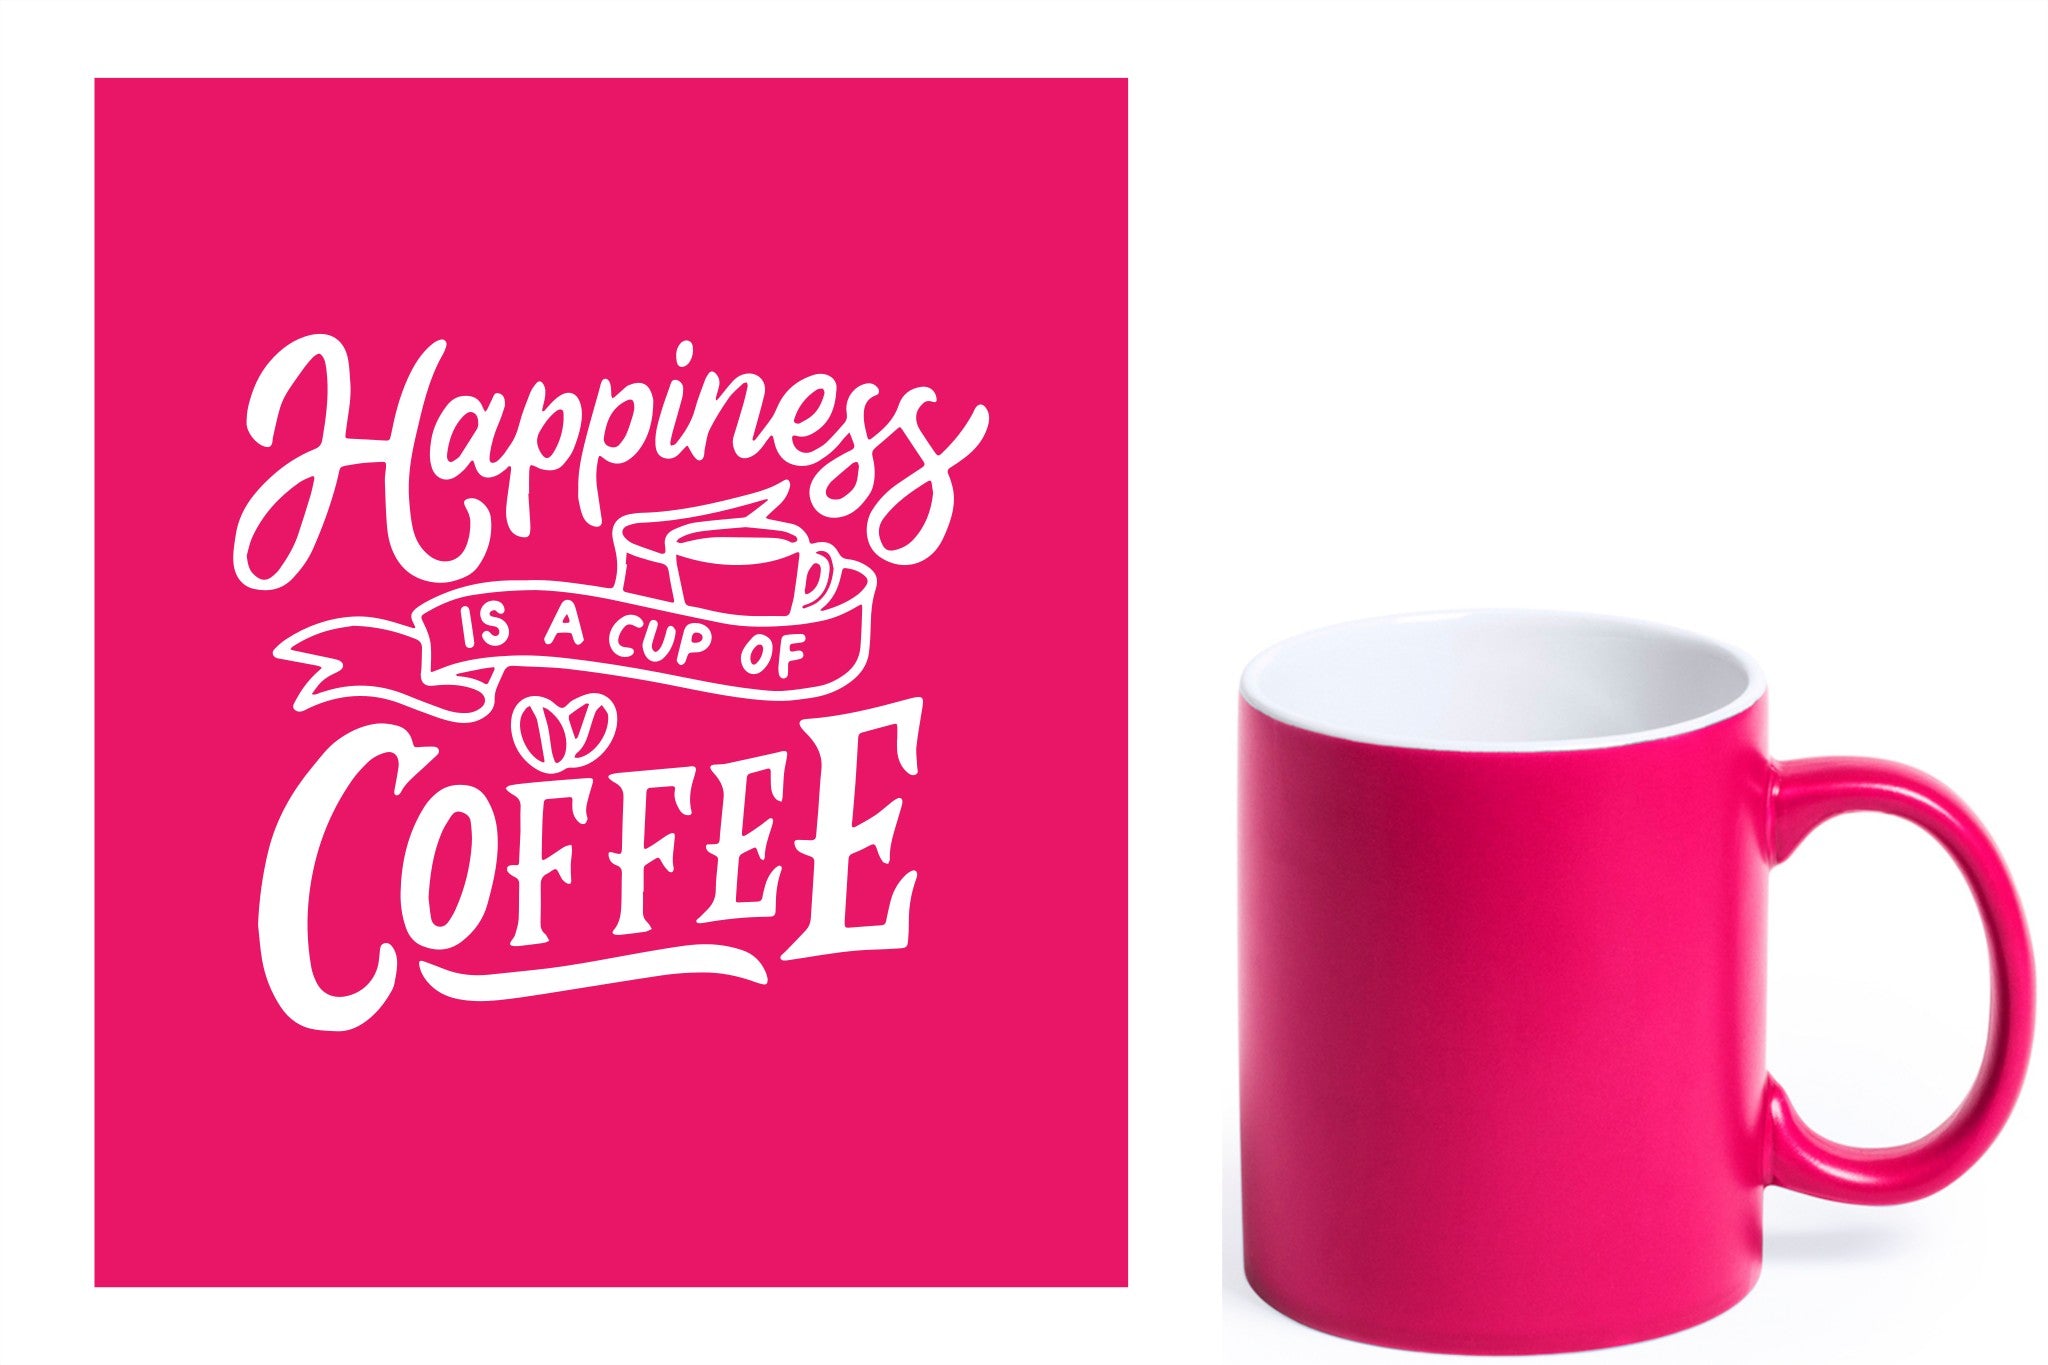 fuchsia keramische mok met witte gravure  'Happiness is a cup of coffee'.